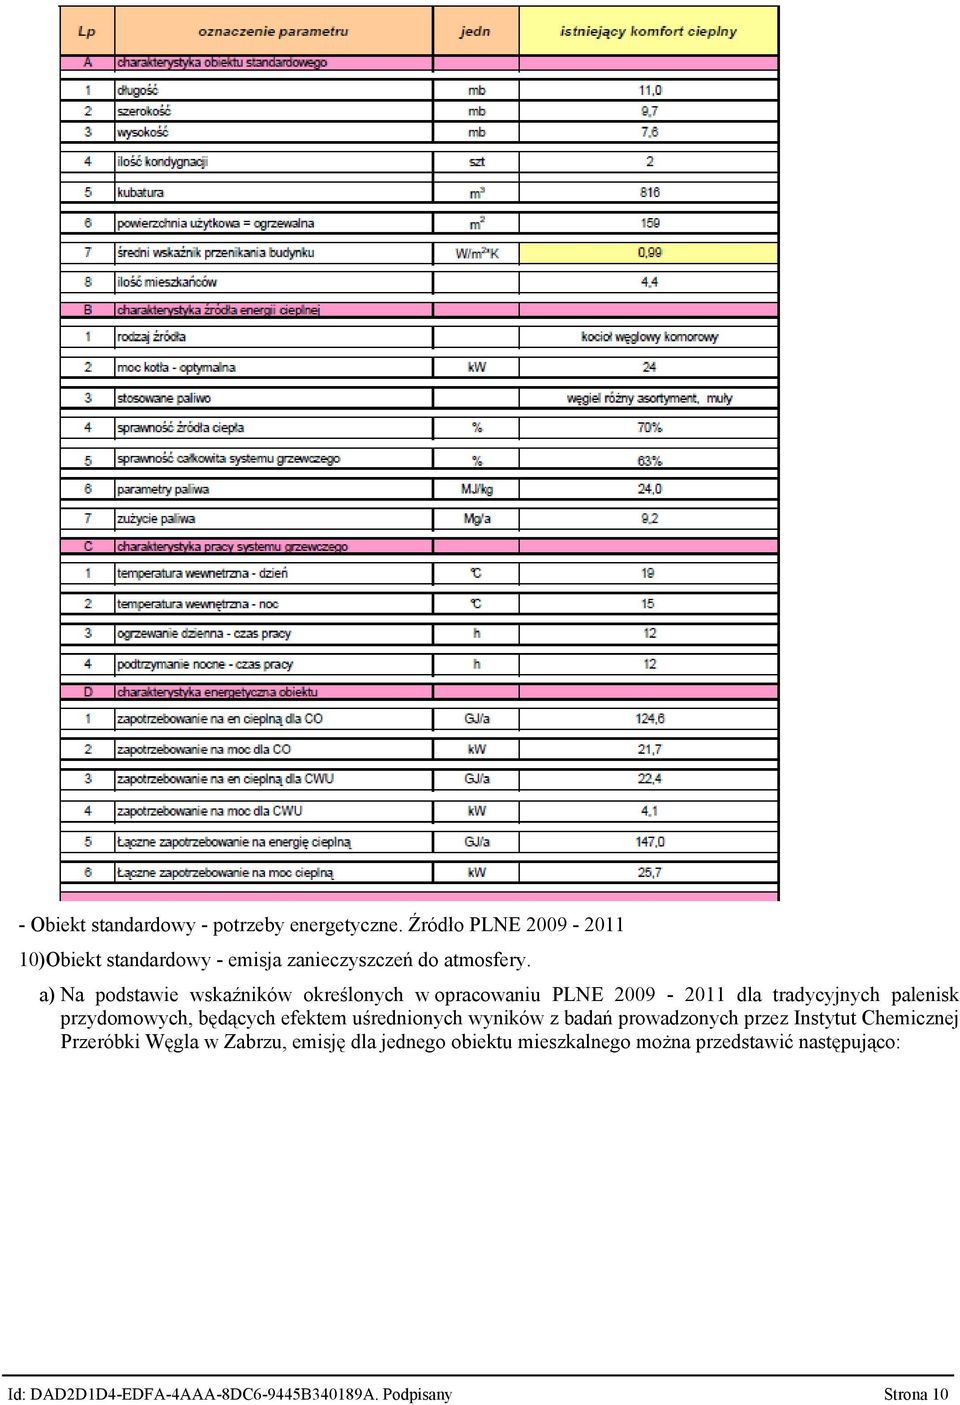 a) Na podstawie wskaźników określonych w opracowaniu PLNE 2009-2011 dla tradycyjnych palenisk przydomowych, będących